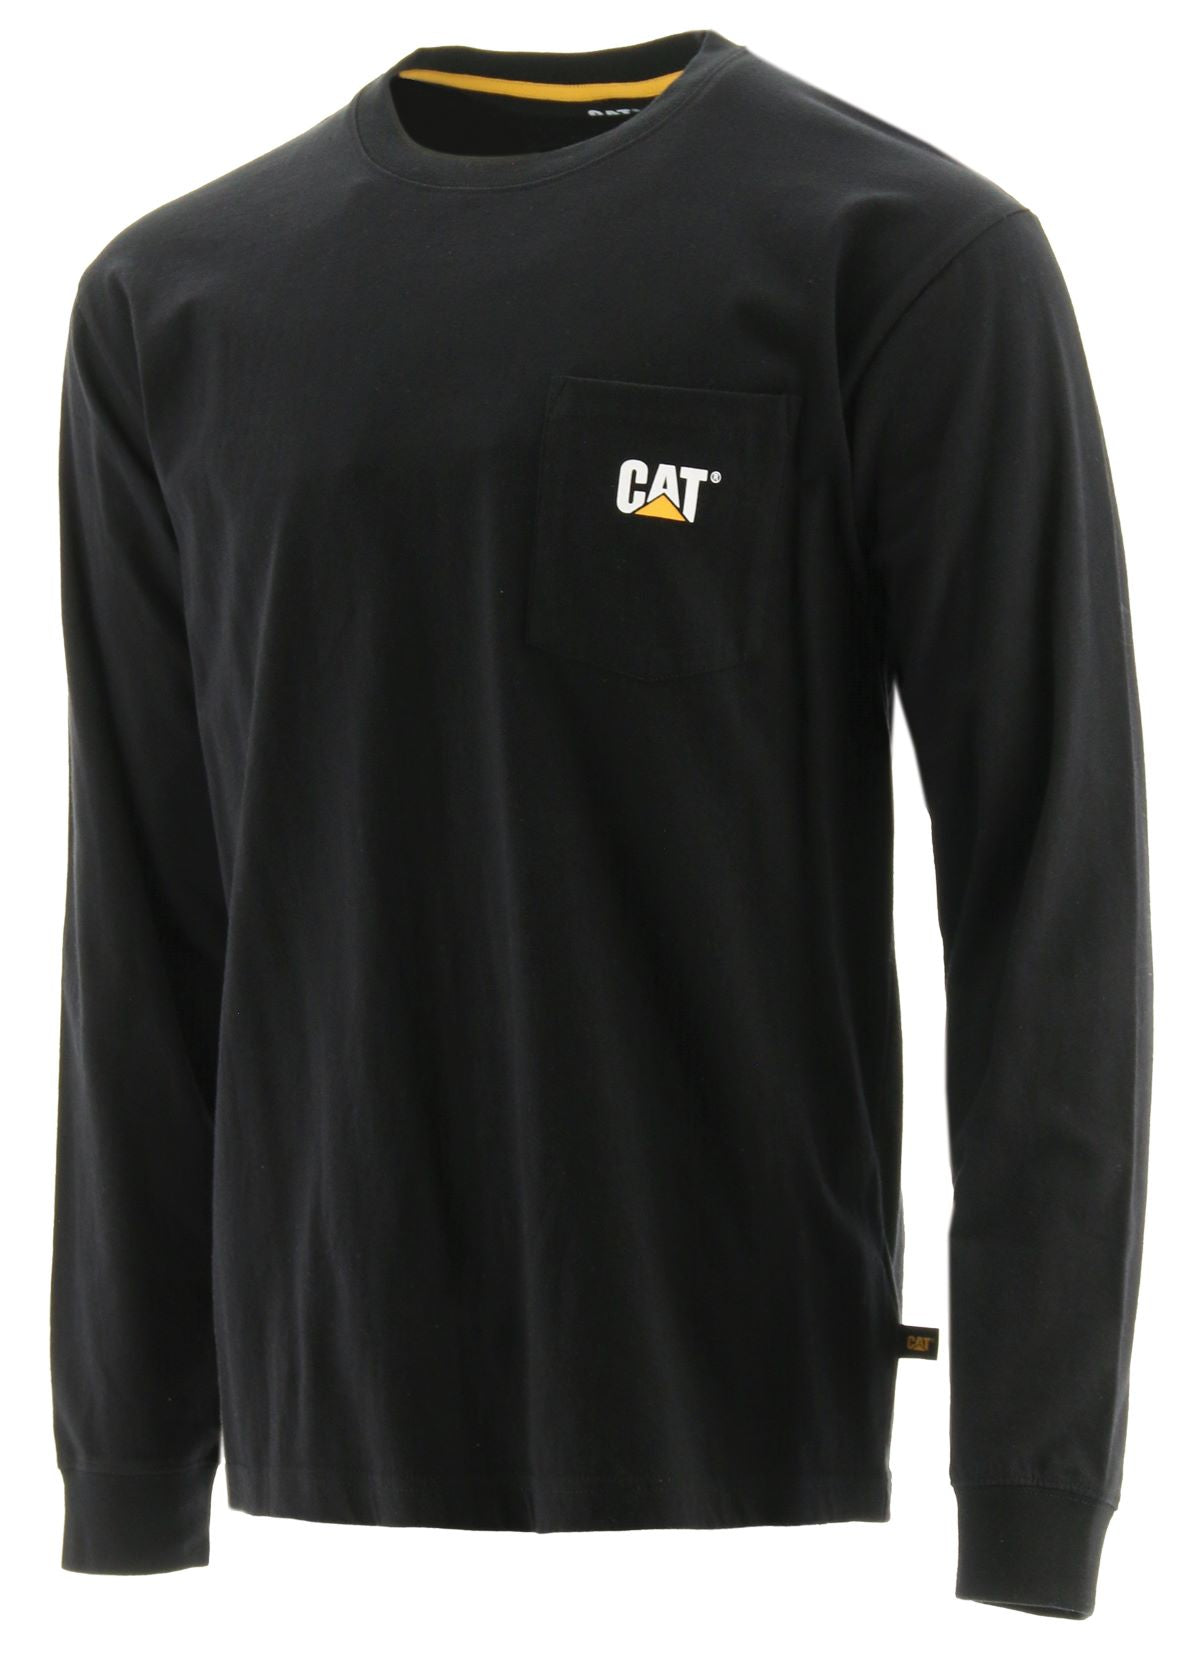 'Caterpillar' Men's Trademark Pocket T-Shirt - Black